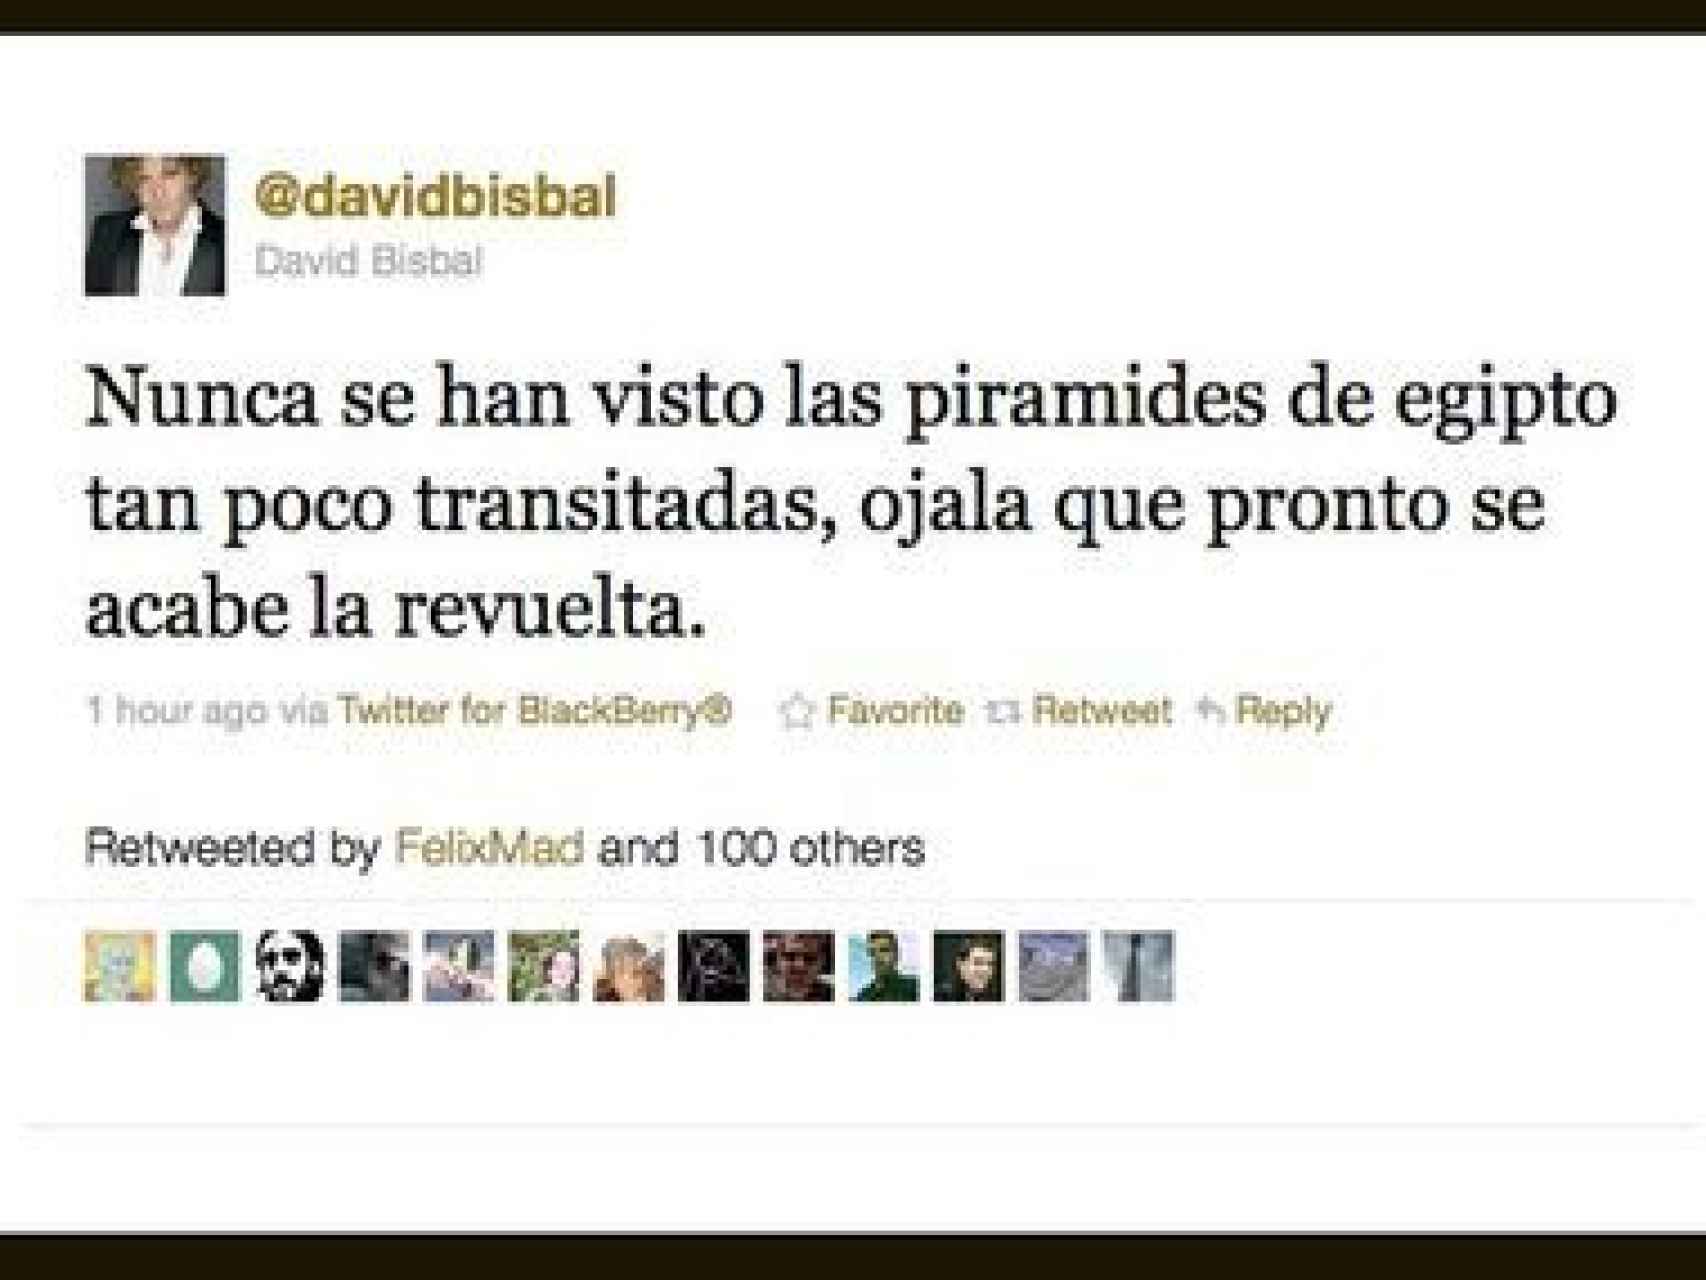 Tweet de David Bisbal en 2011